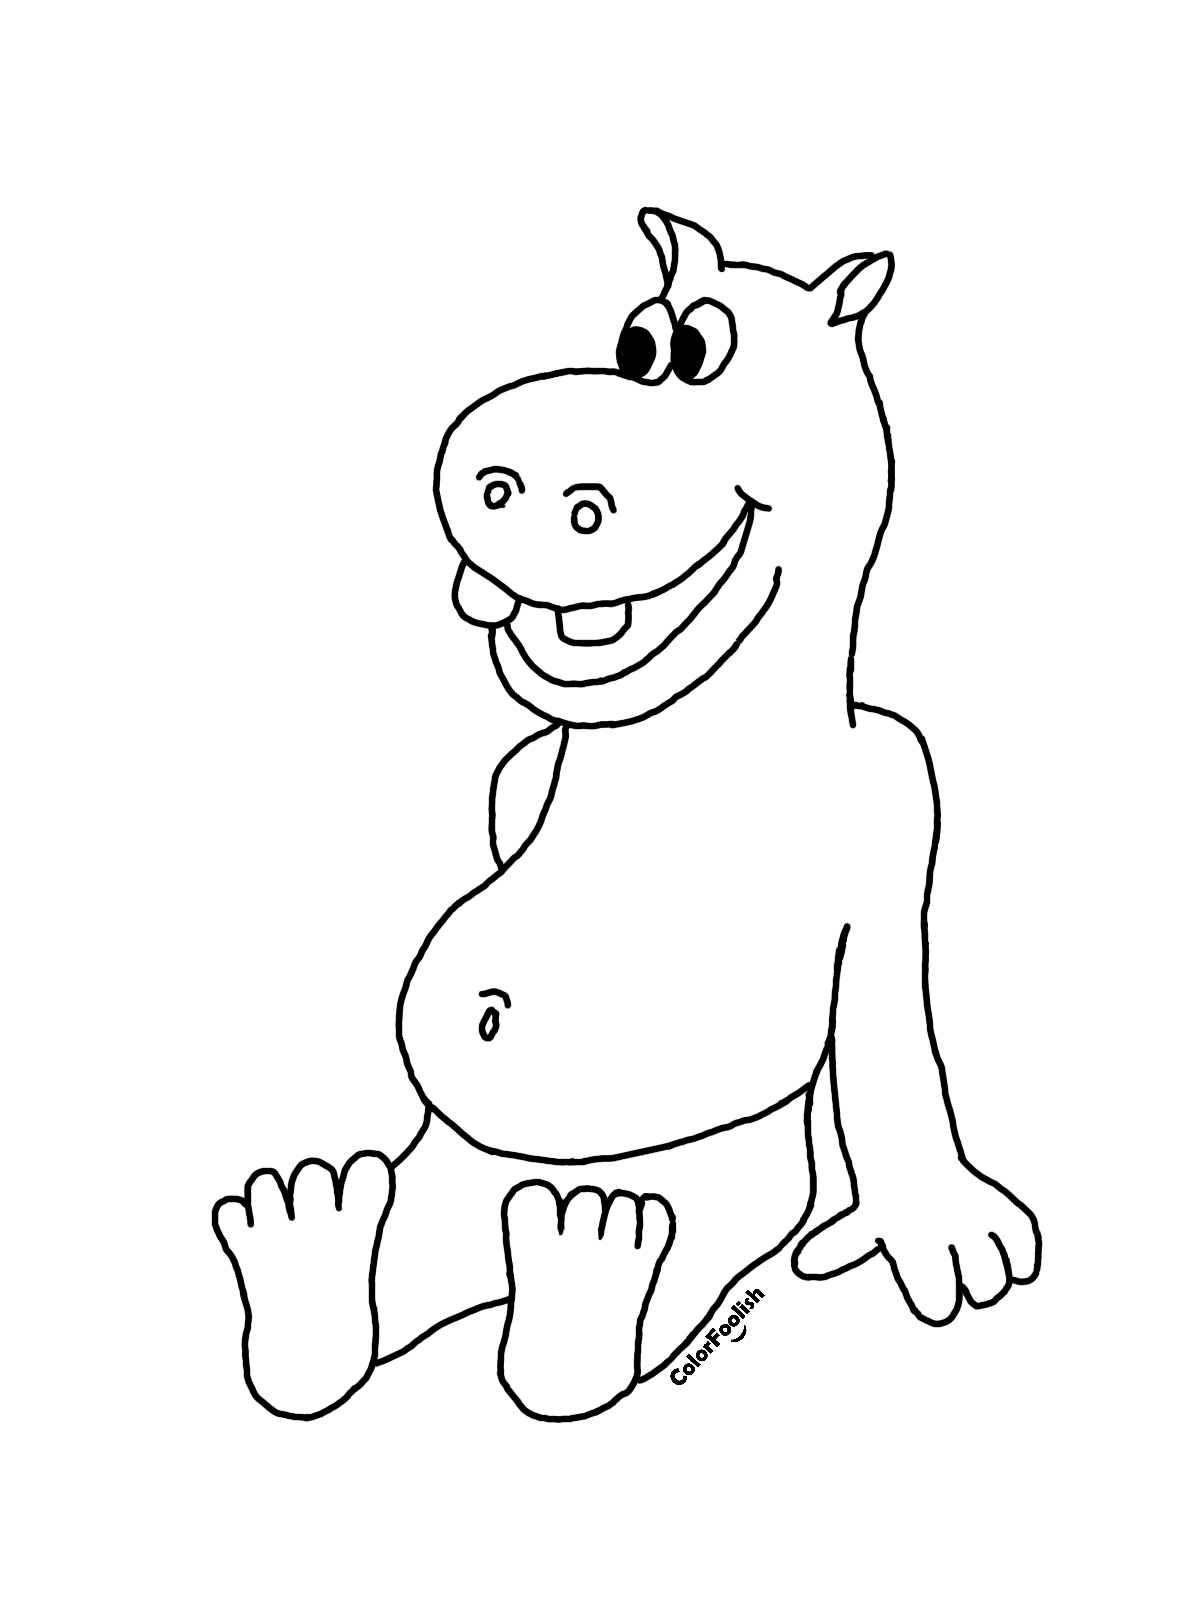 Dibujo para colorear de un hipopótamo feliz